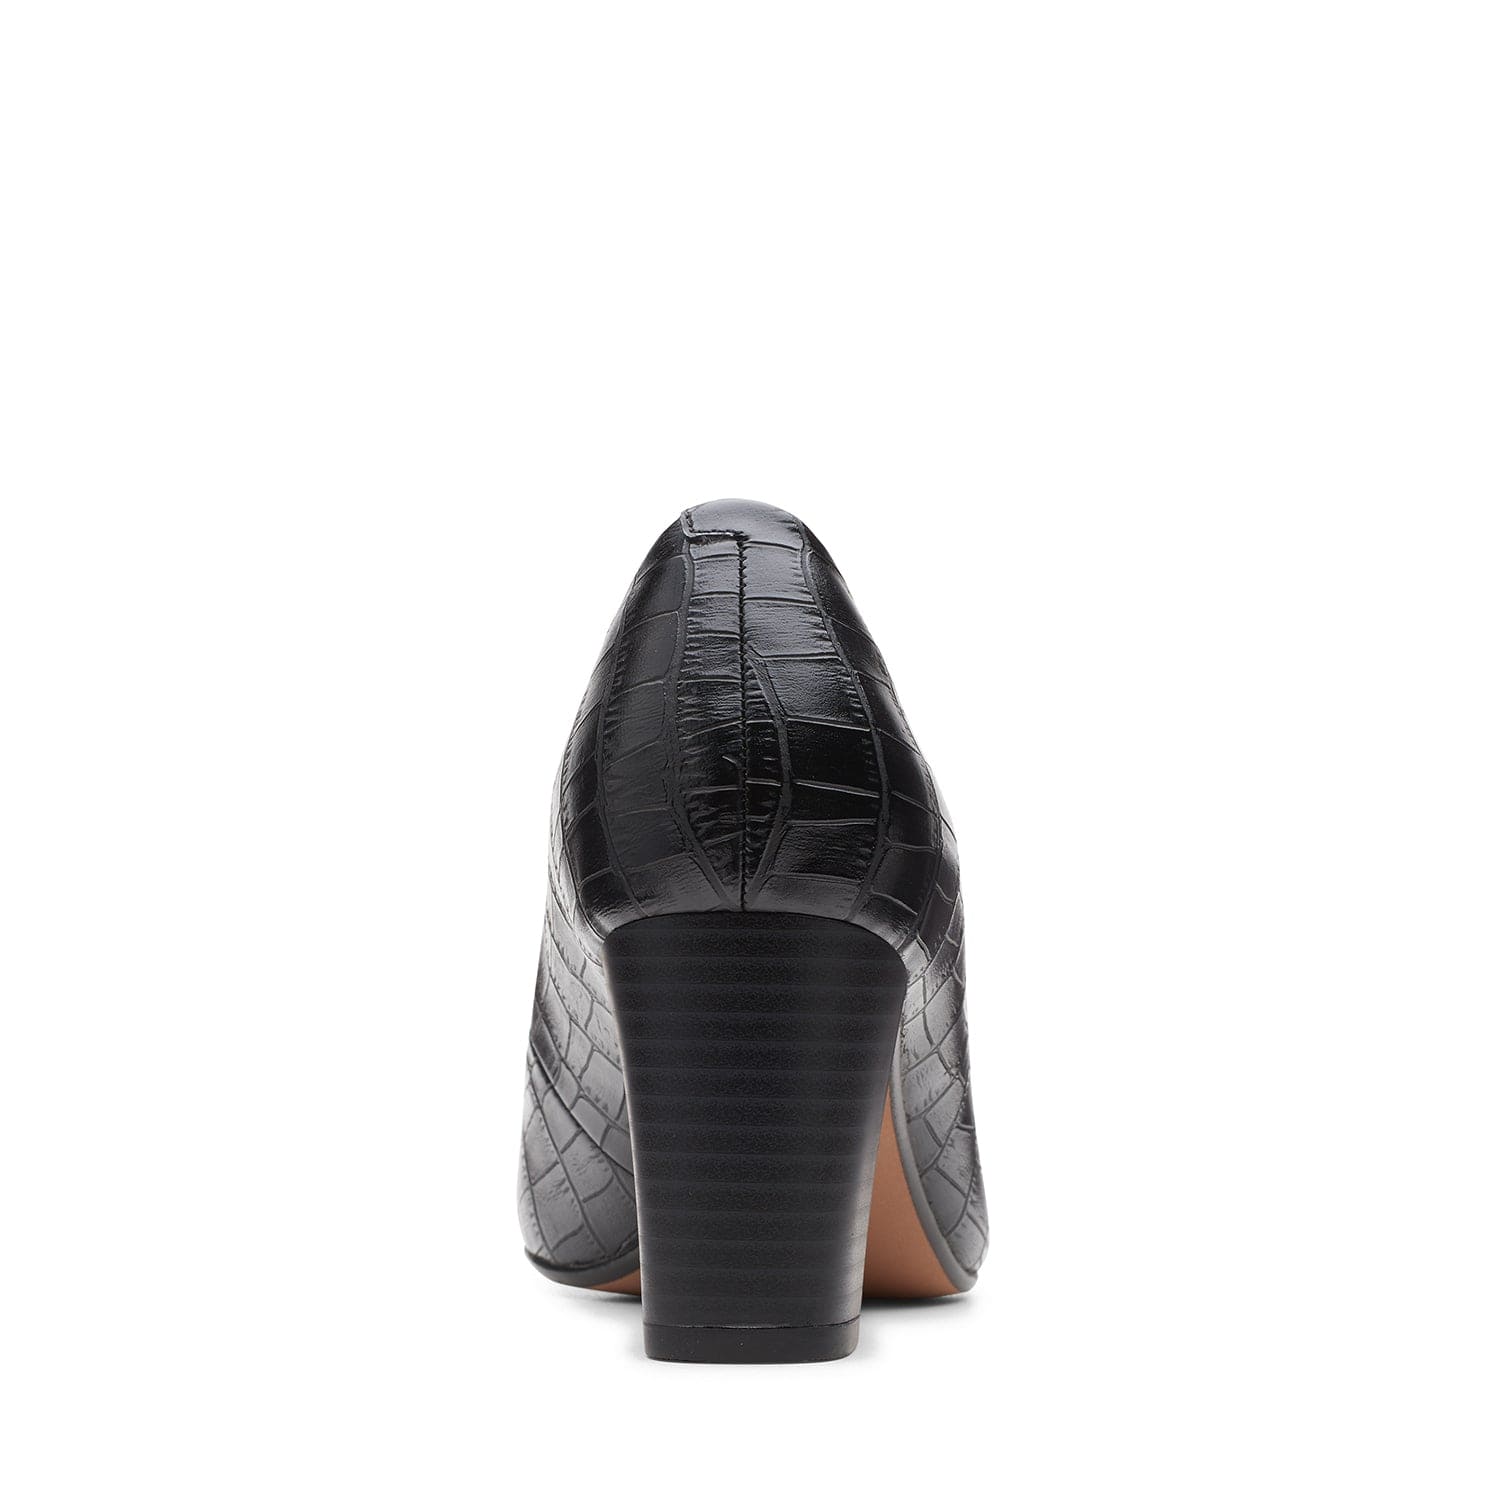 Clarks Aubrie Sun Shoes - Black Croc - 261634094 - D Width (Standard Fit)